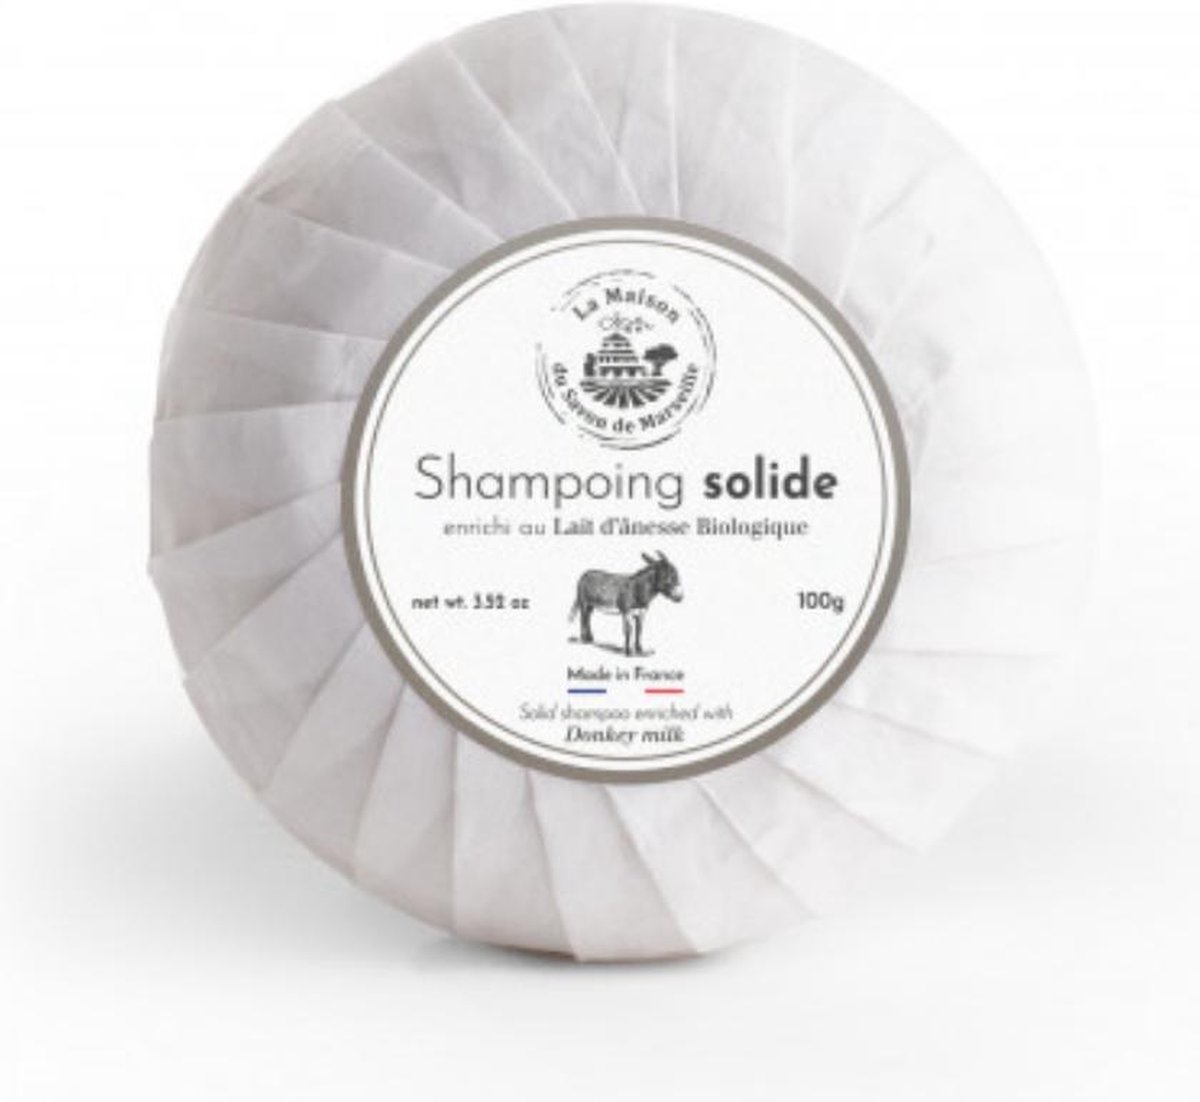 Shampoo Bar - Biologische Ezelinnenmelk - 100gr. - La Maison du Savon de Marseille